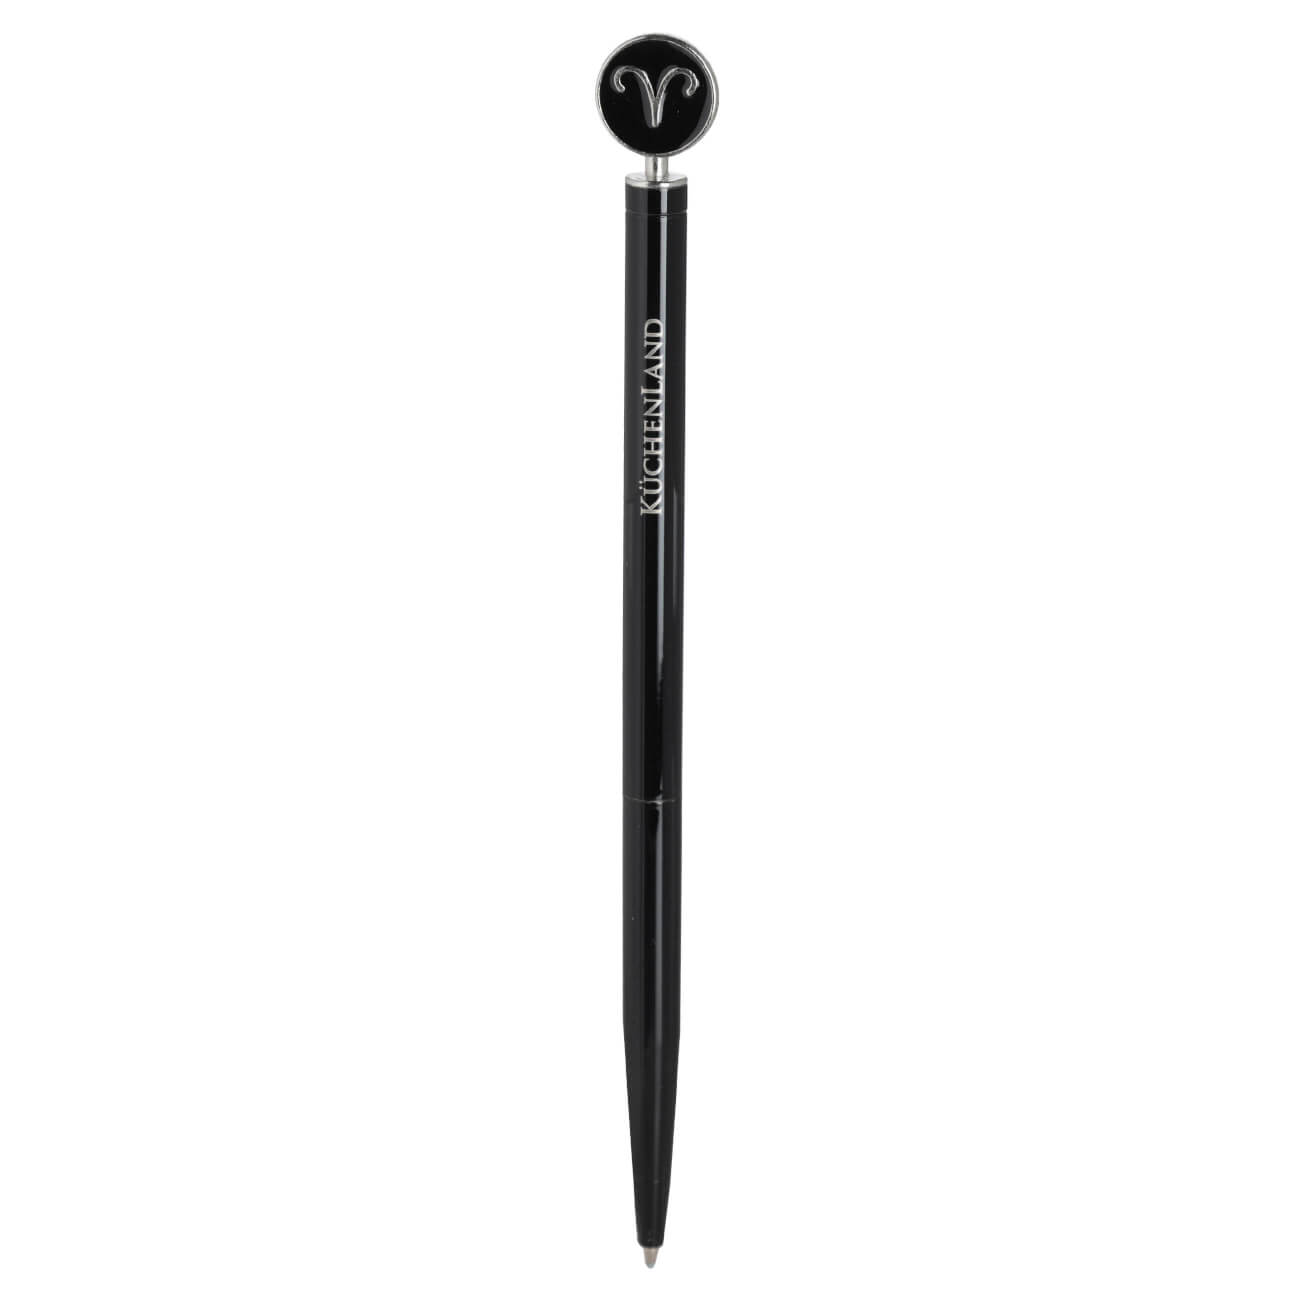 Ручка шариковая, 15 см, с фигуркой, сталь, черно-серебристая, Овен, Zodiac металлическая балконная ручка komfort москитные системы